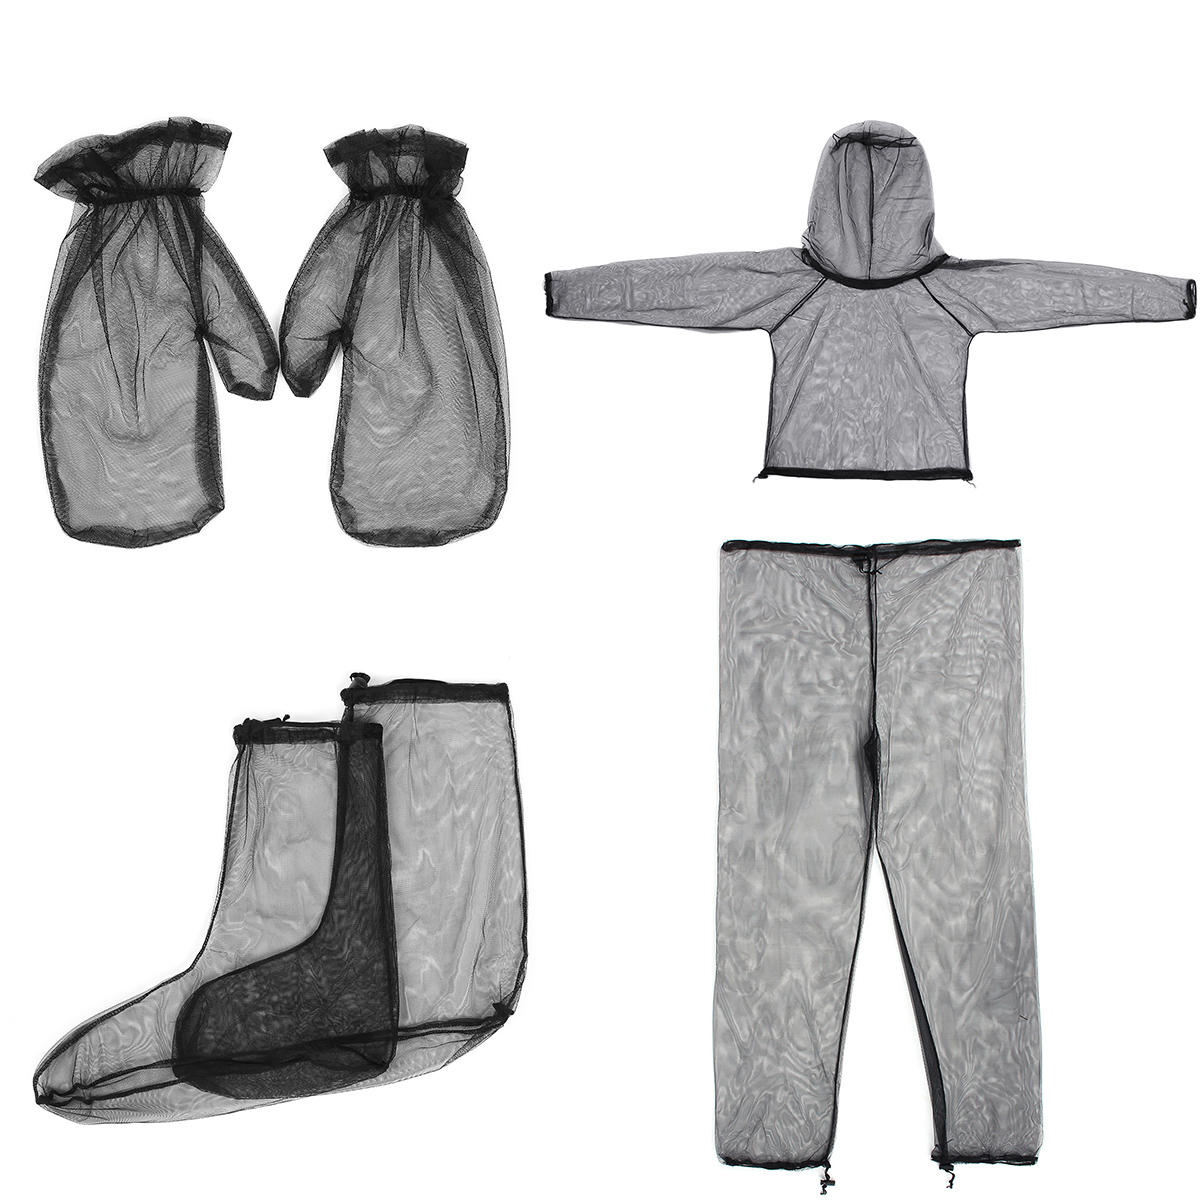 Traje de 4 piezas (chaqueta, pantalón, guantes y calcetines) a prueba de mosquitos, ligero y de malla de alta densidad para viajes y camping al aire libre.